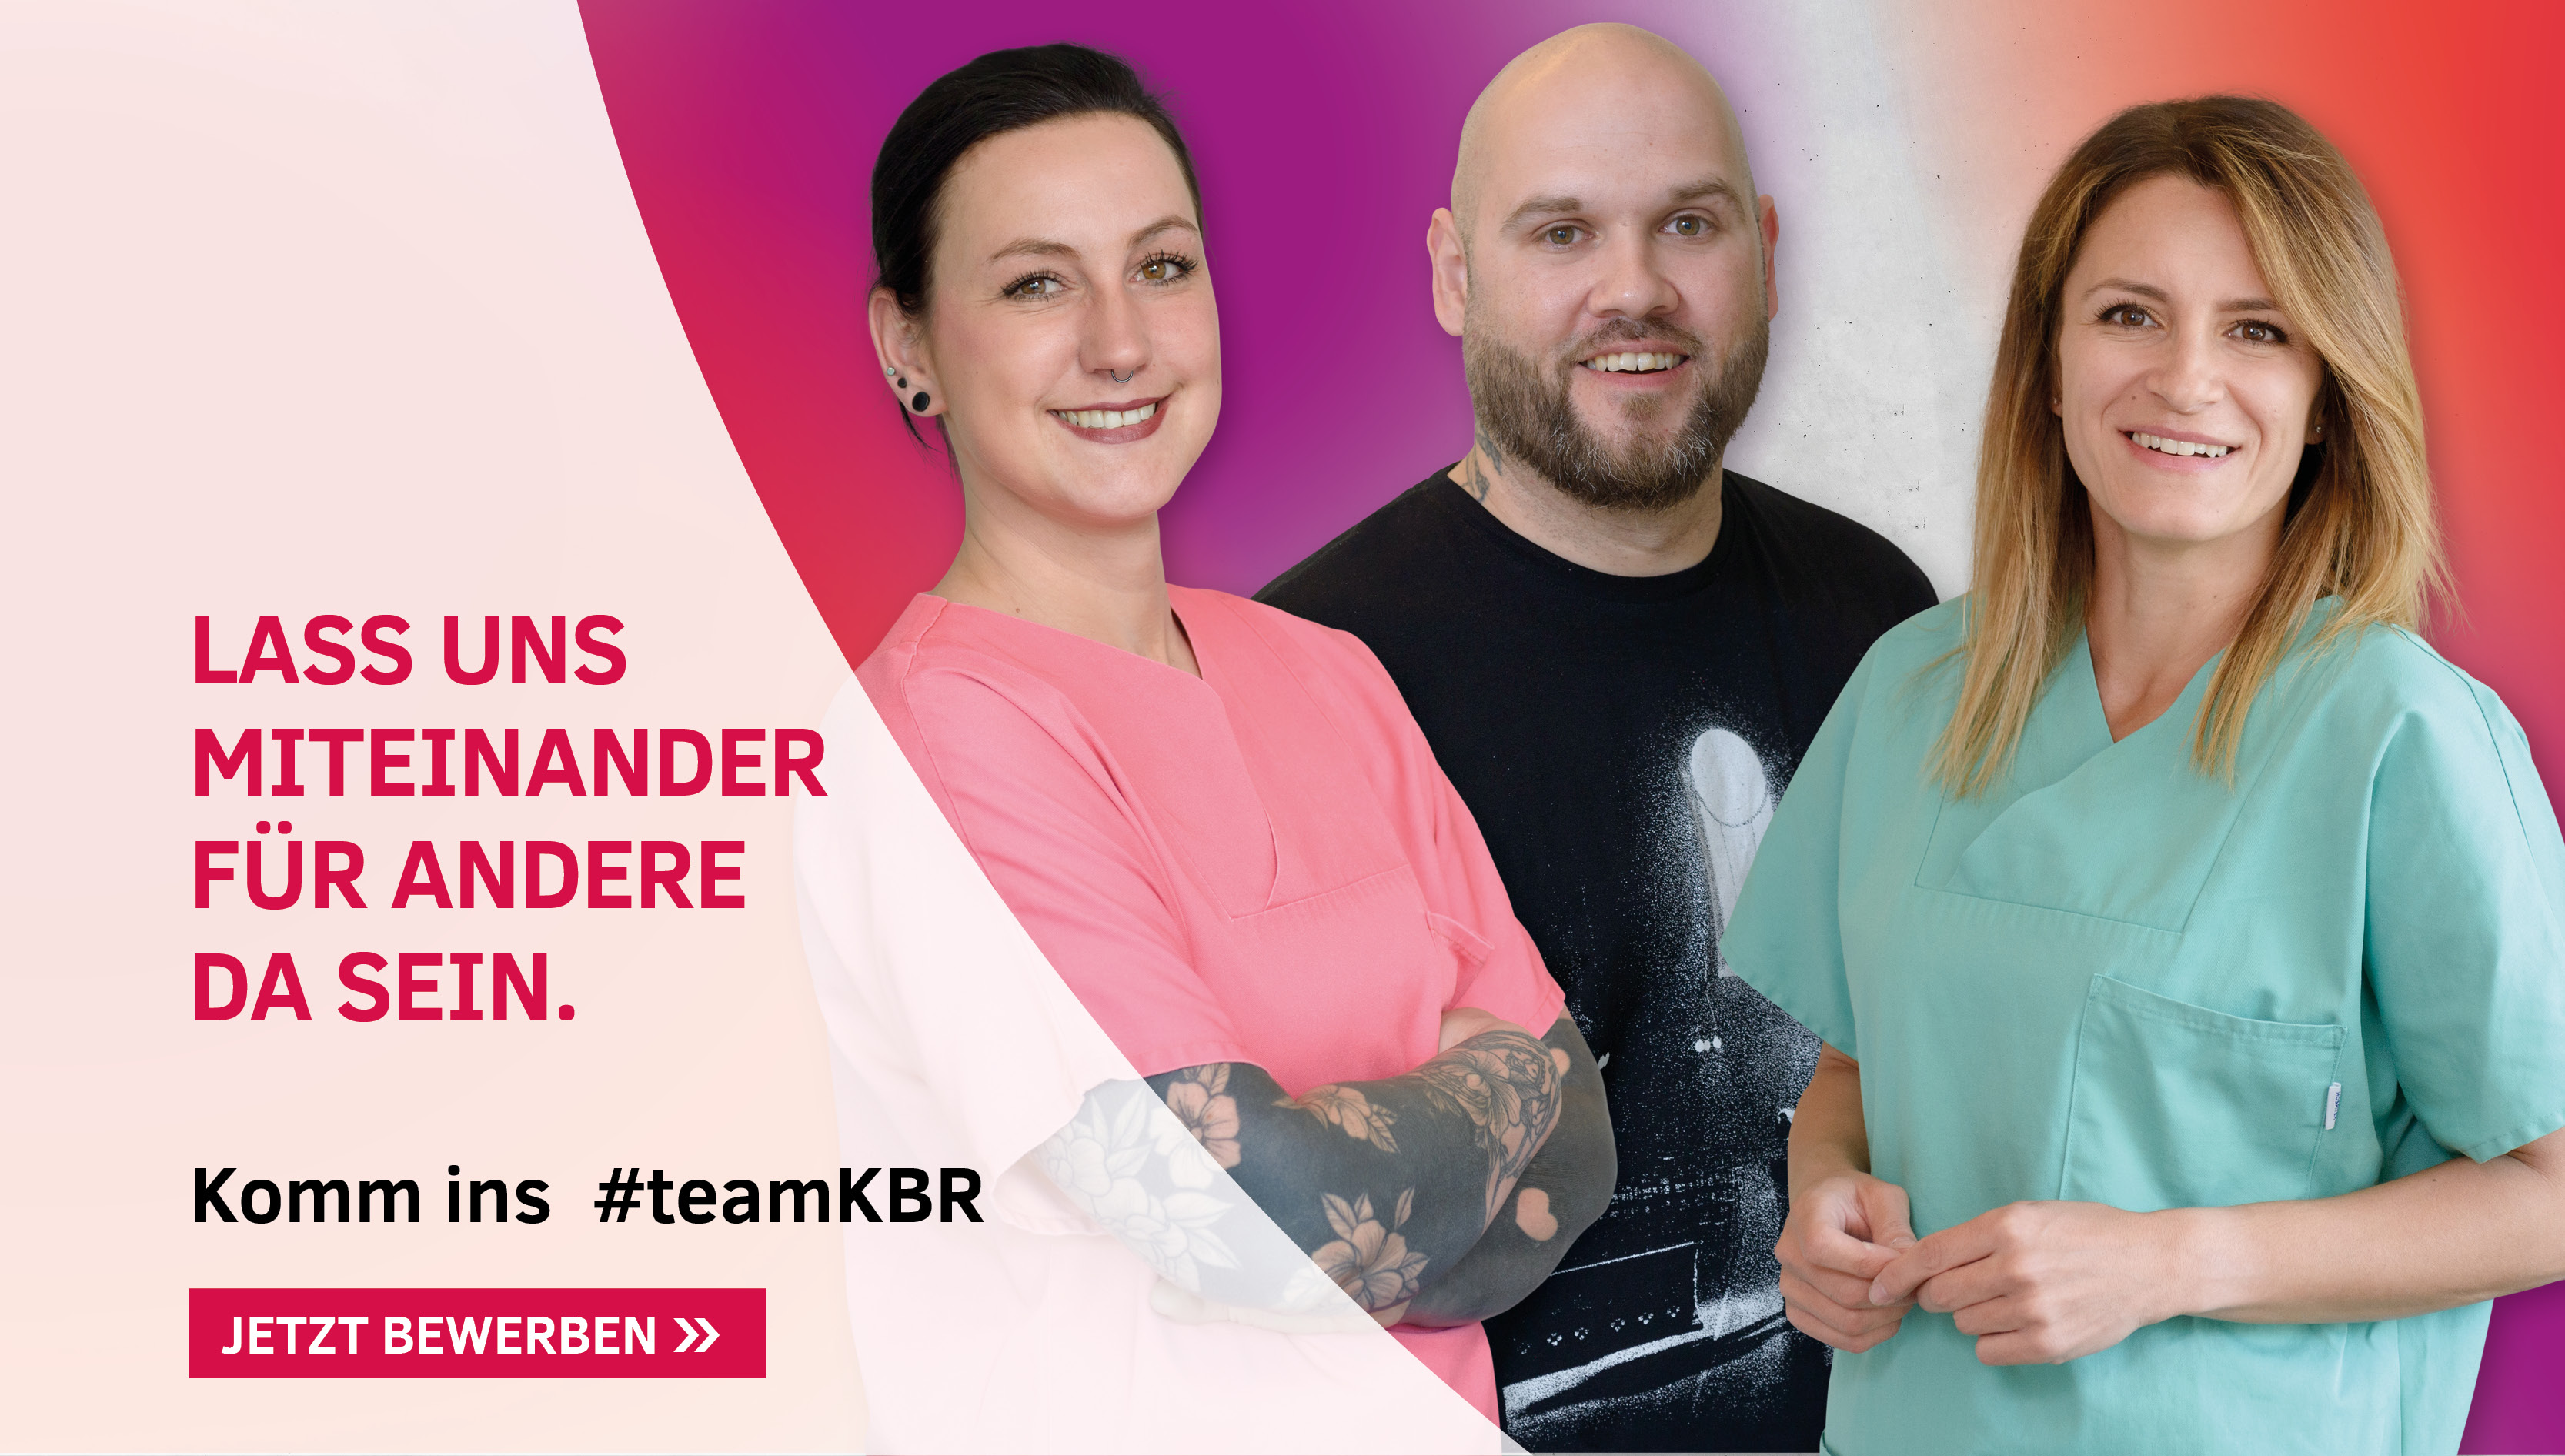 Bild von drei Mitarbeitenden und Text: Lass uns miteinander für andere da sein. Komm ins #teamKBR. Jetzt bewerben.